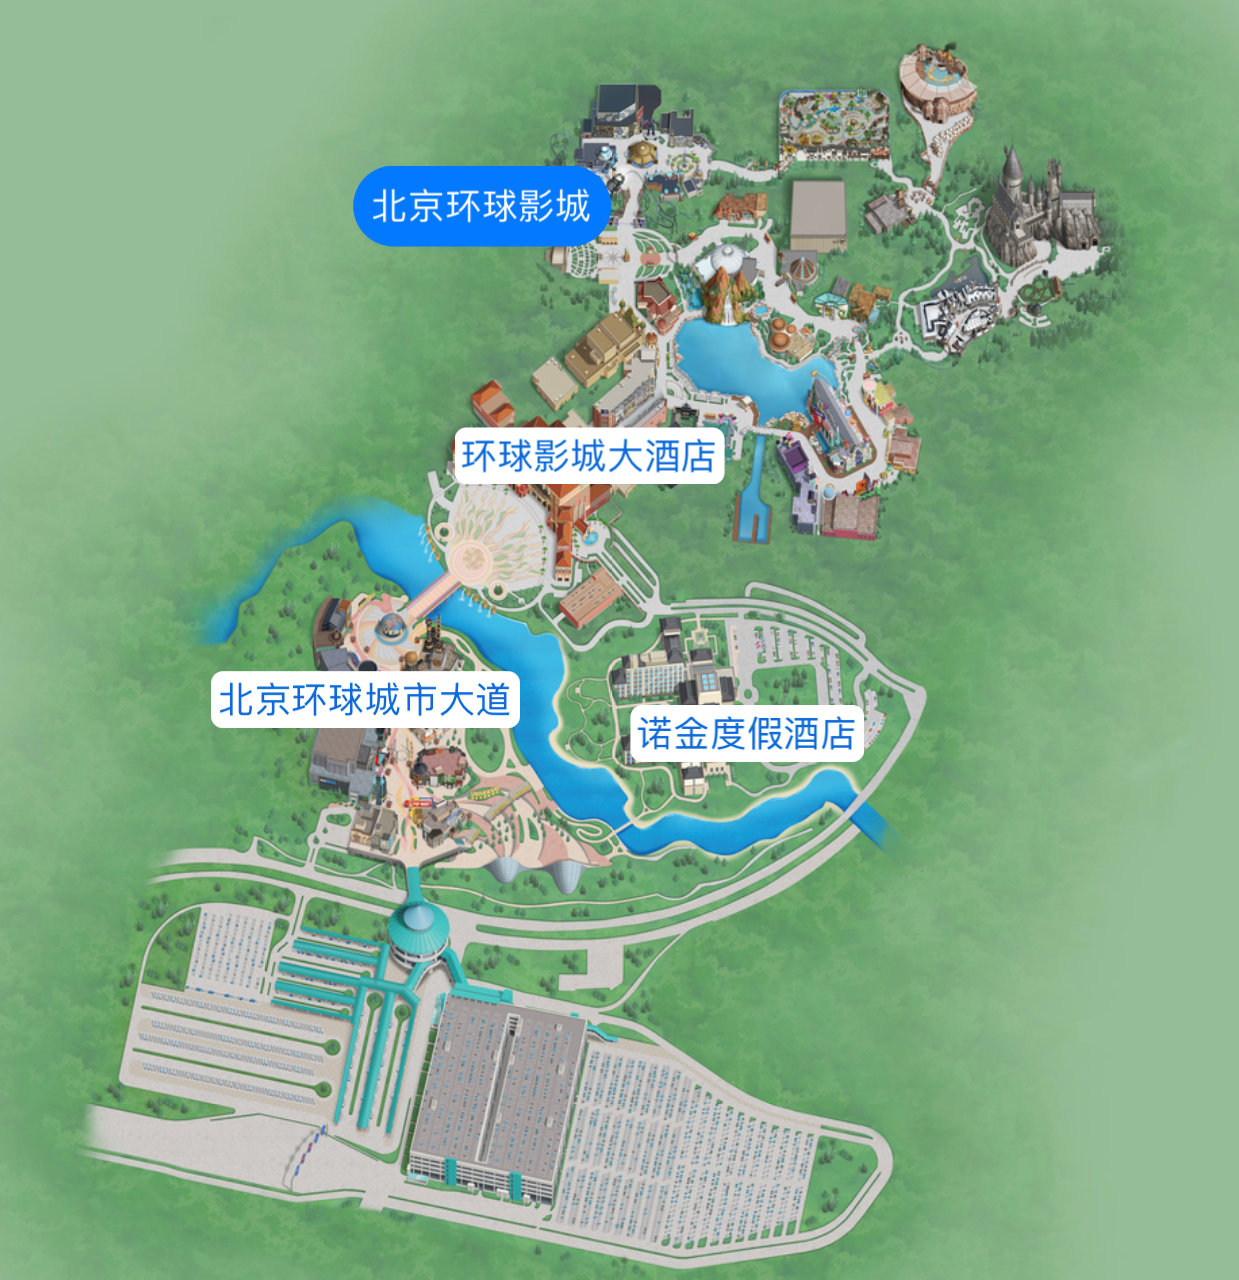 北京环球影城总体规划图片